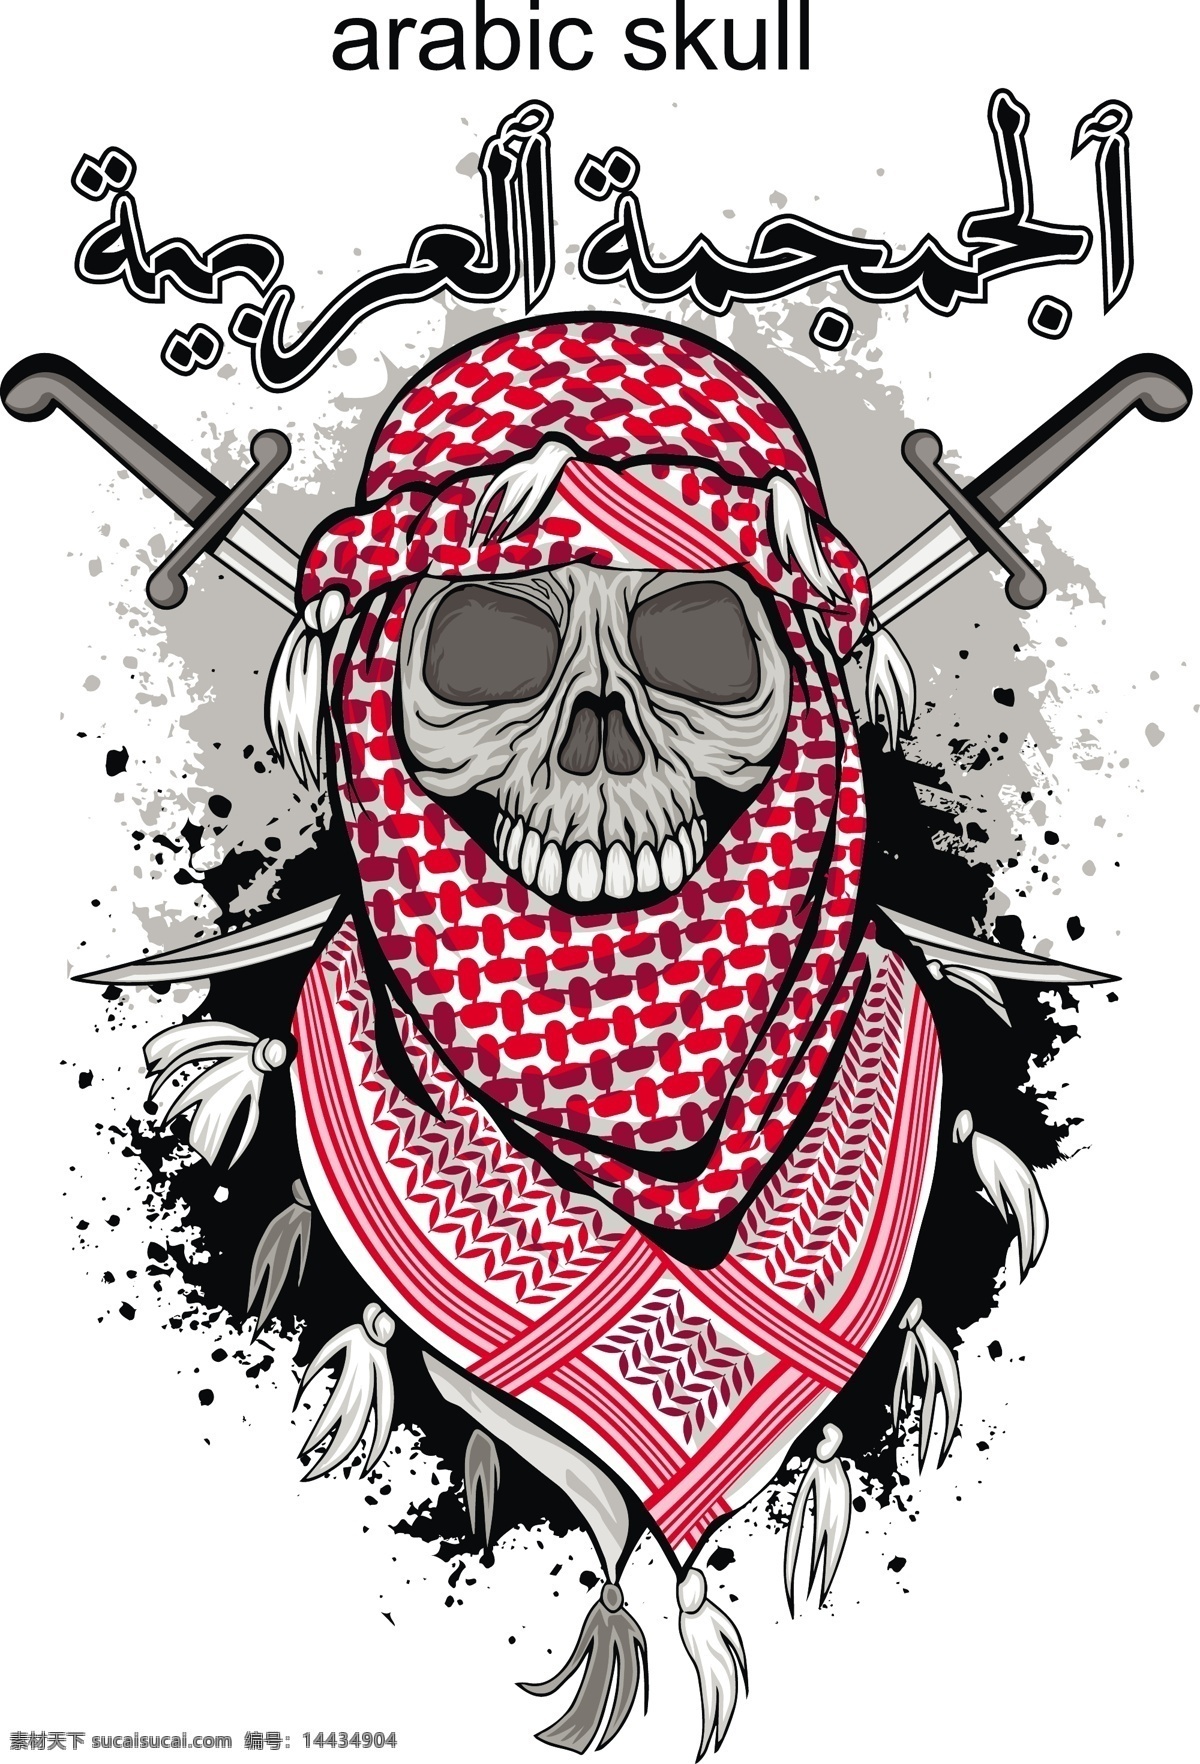 阿拉伯 战争 骷髅 枪支 骷髅头 红色围巾骷髅 插画 设计素材 生活百科 矢量素材